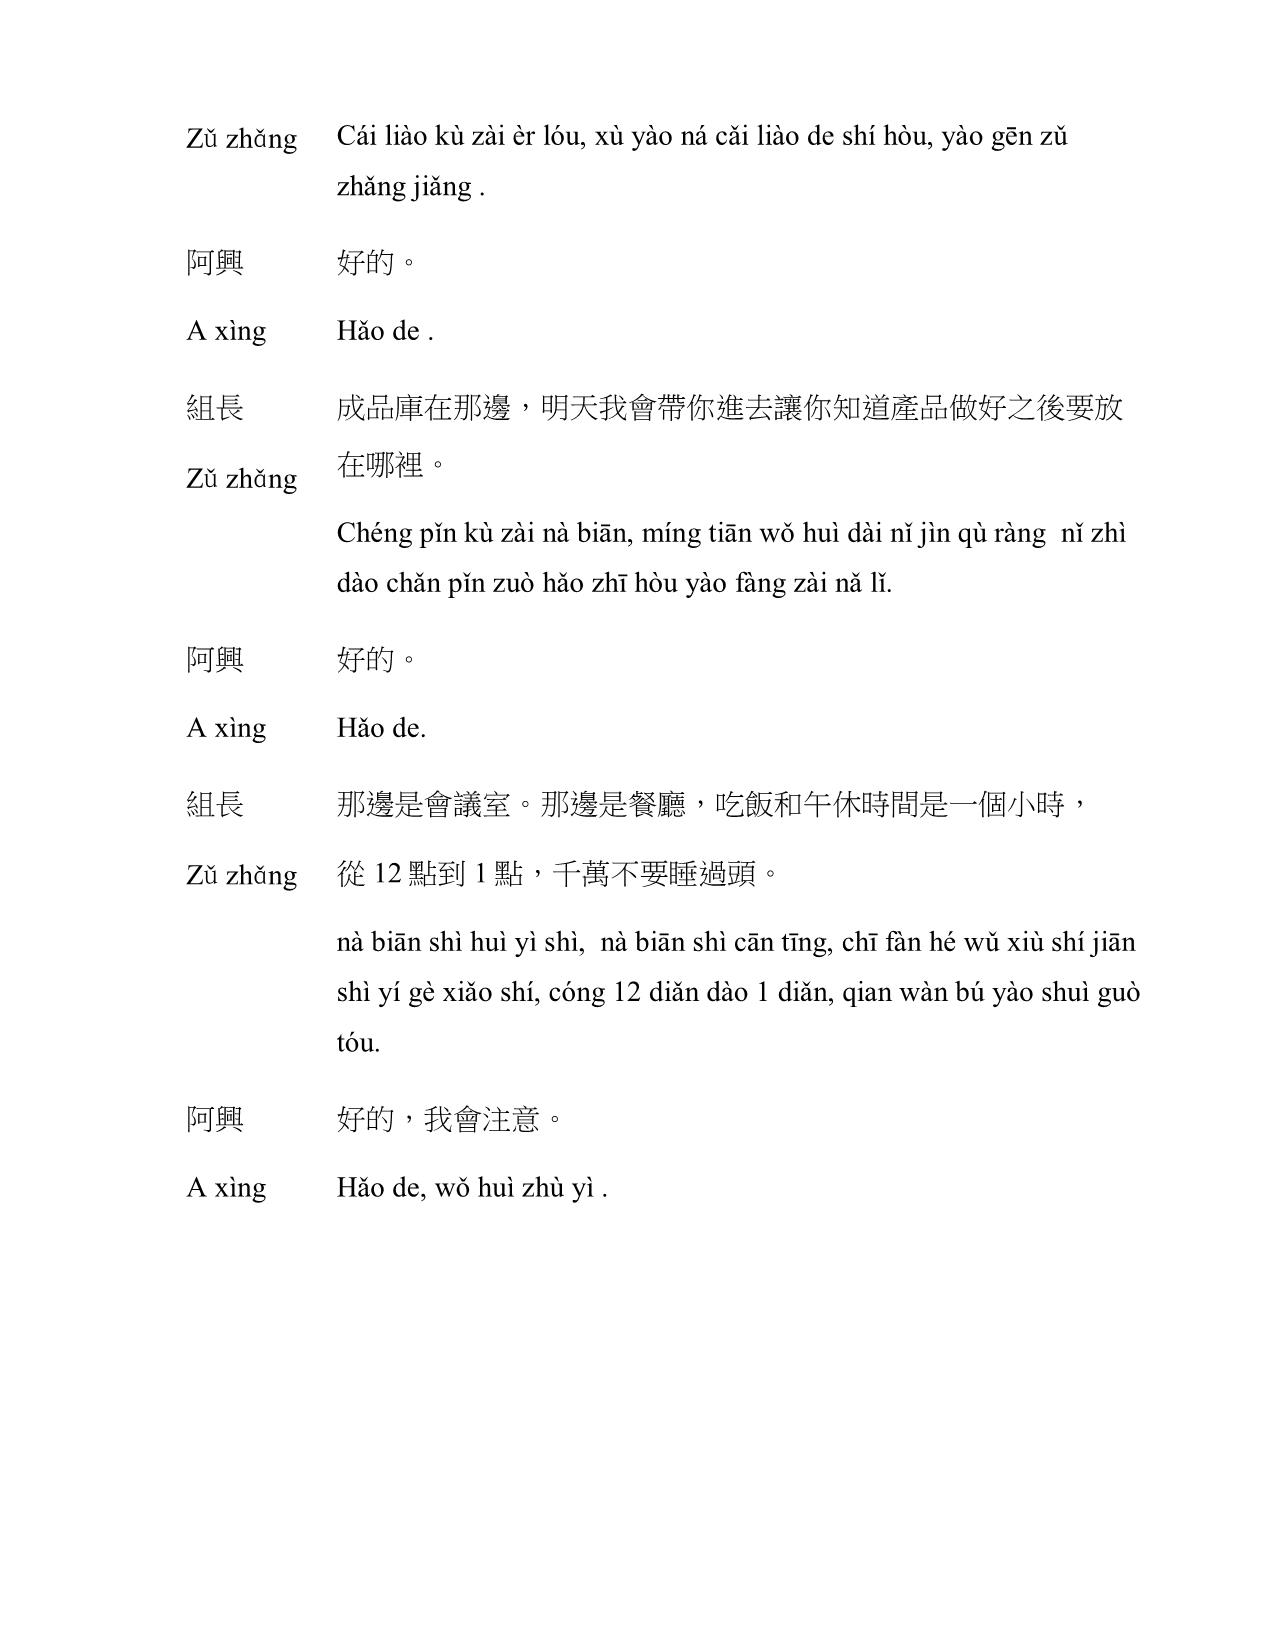 Giáo trình Chương trình tiếng Hoa phục vụ cho lao động sản xuất, chế tạo trang 5